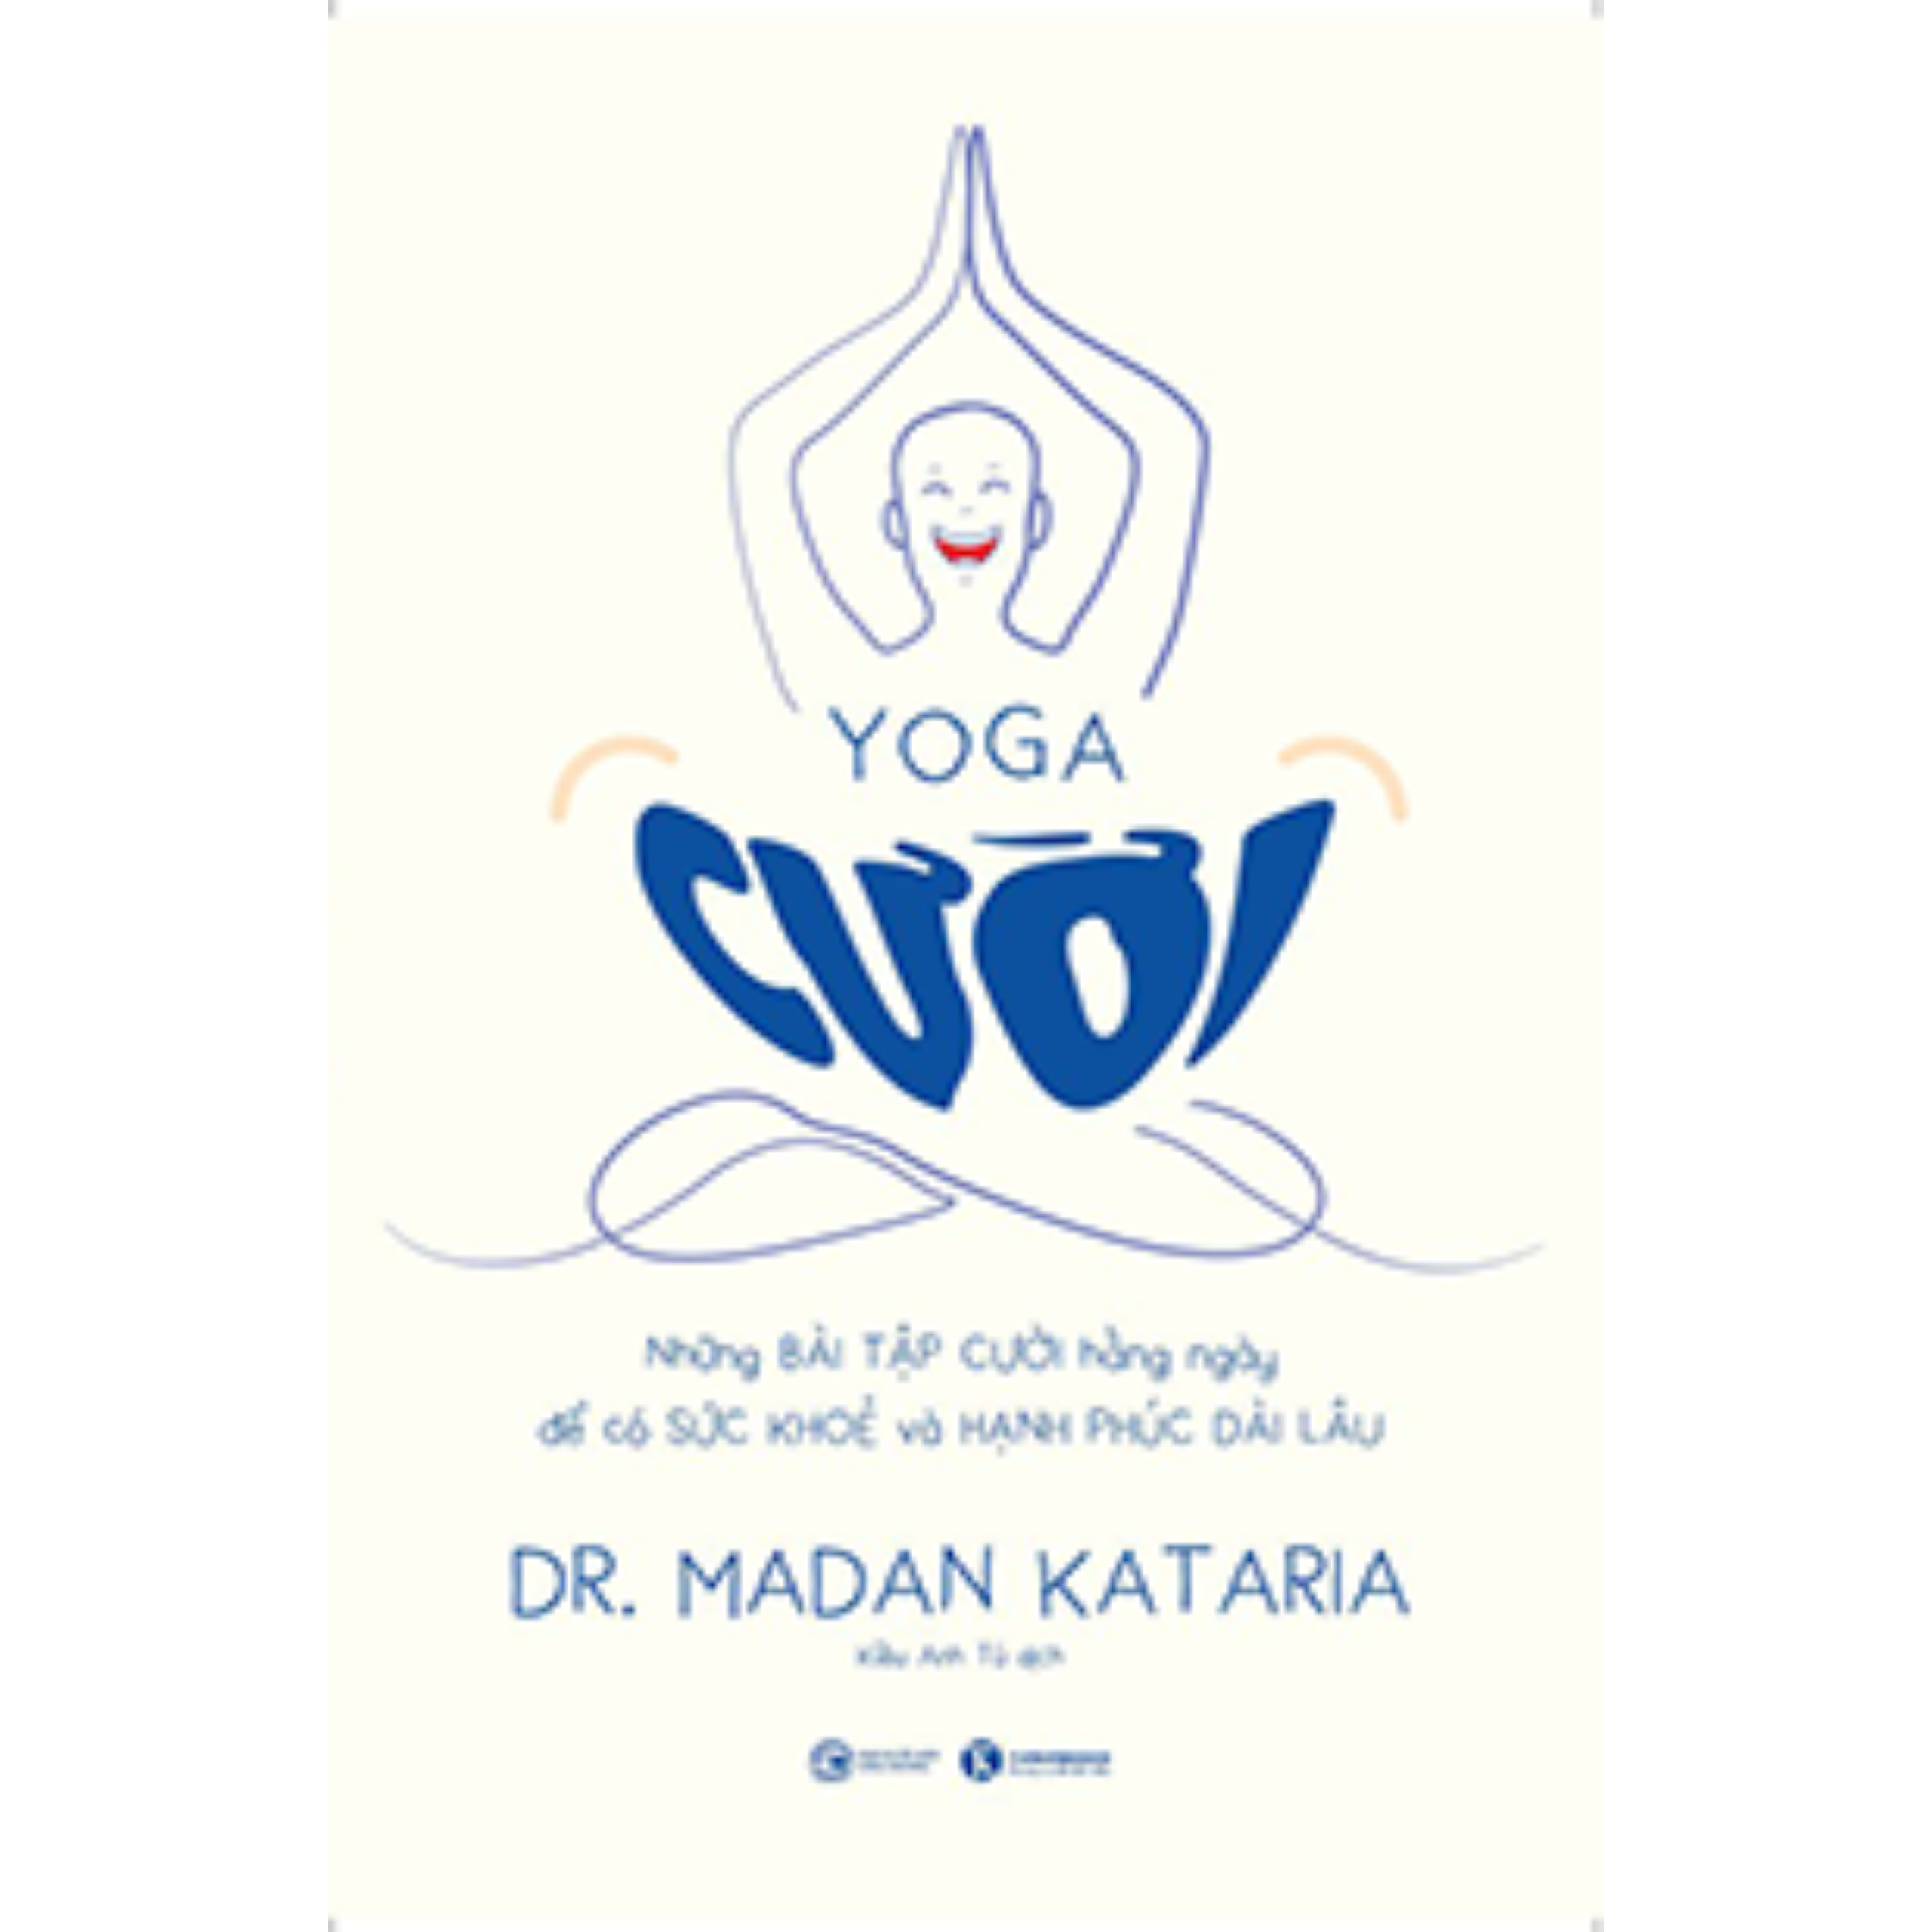 Yoga Cười - Những Bài Tập Cười Hàng Ngày Để Có Sức Khỏe Và Hạnh Phúc Dài Lâu